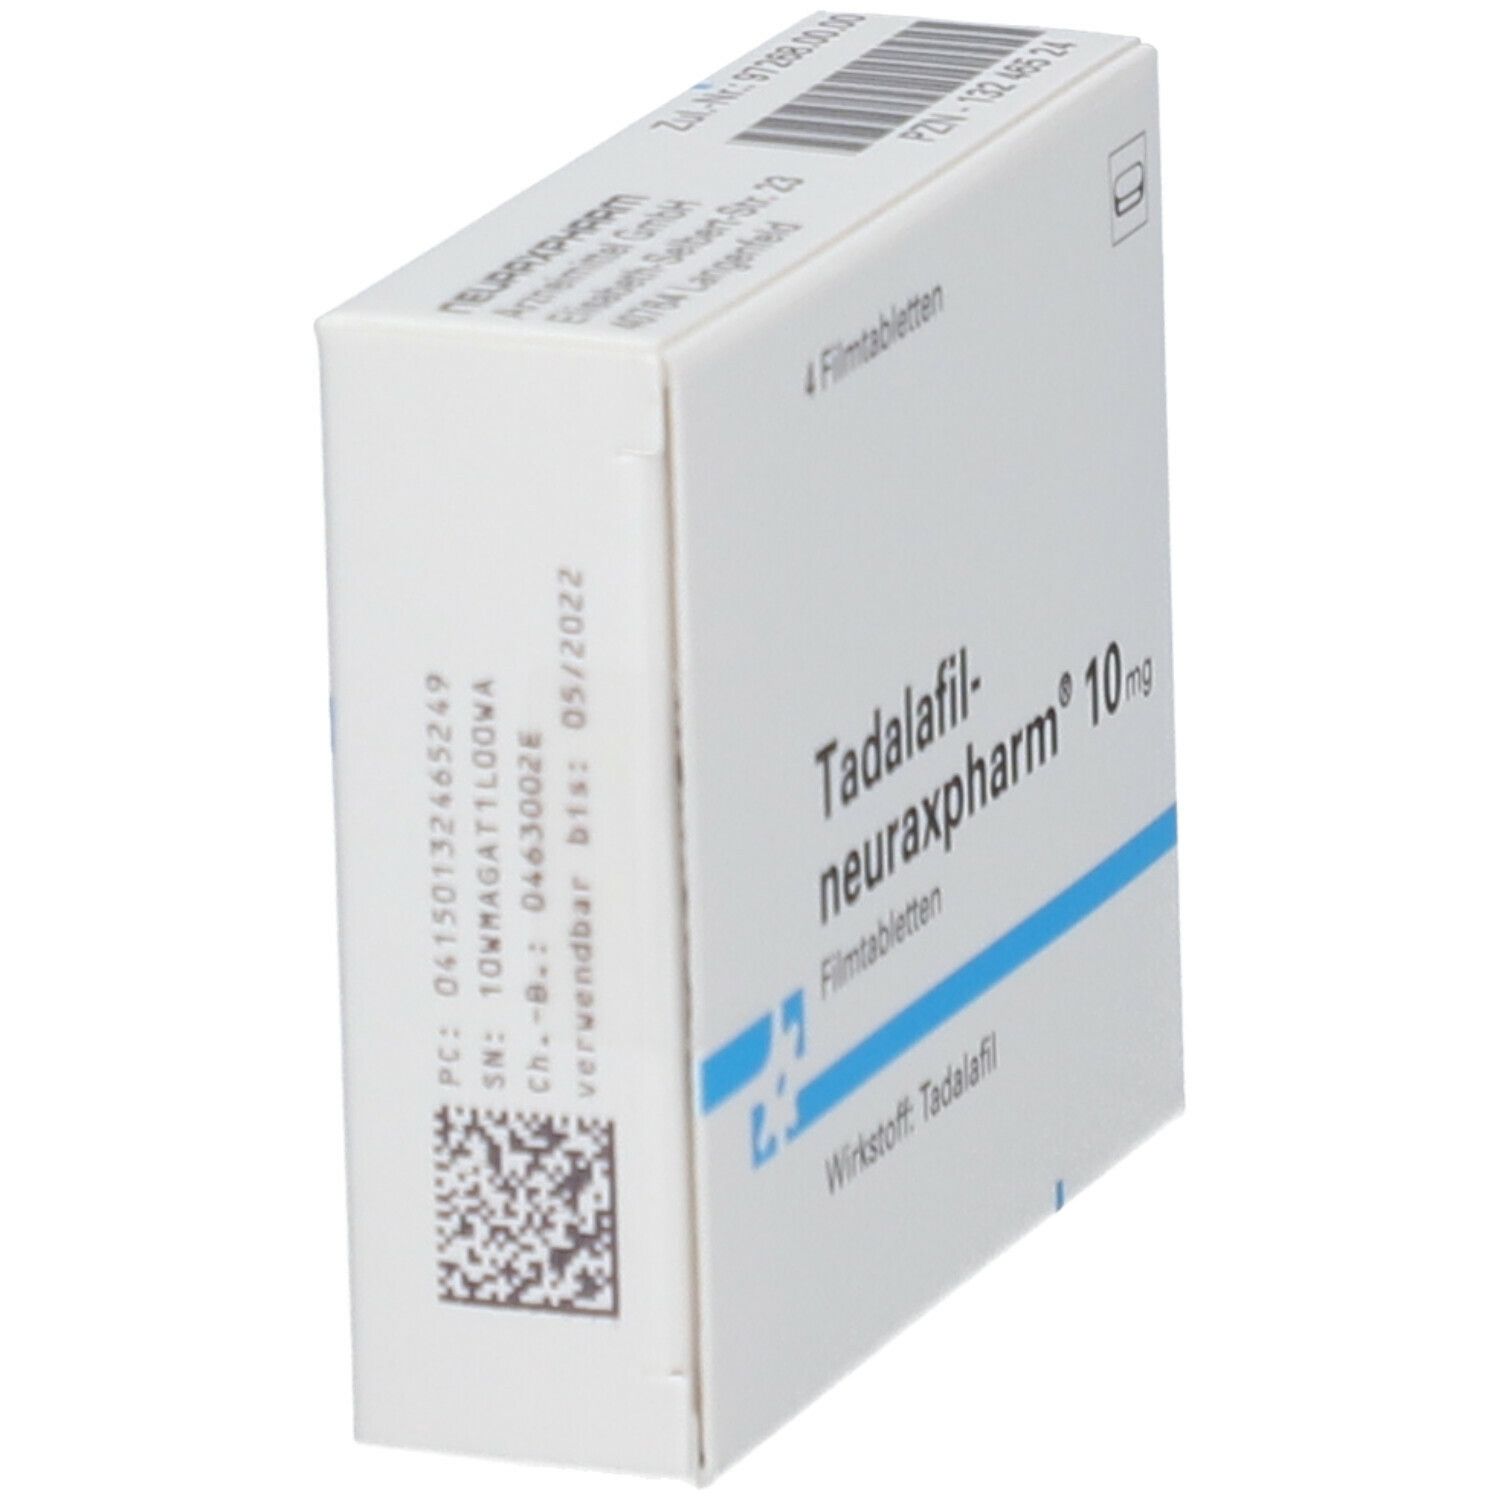 Tadalafil-neuraxpharm® 10 mg